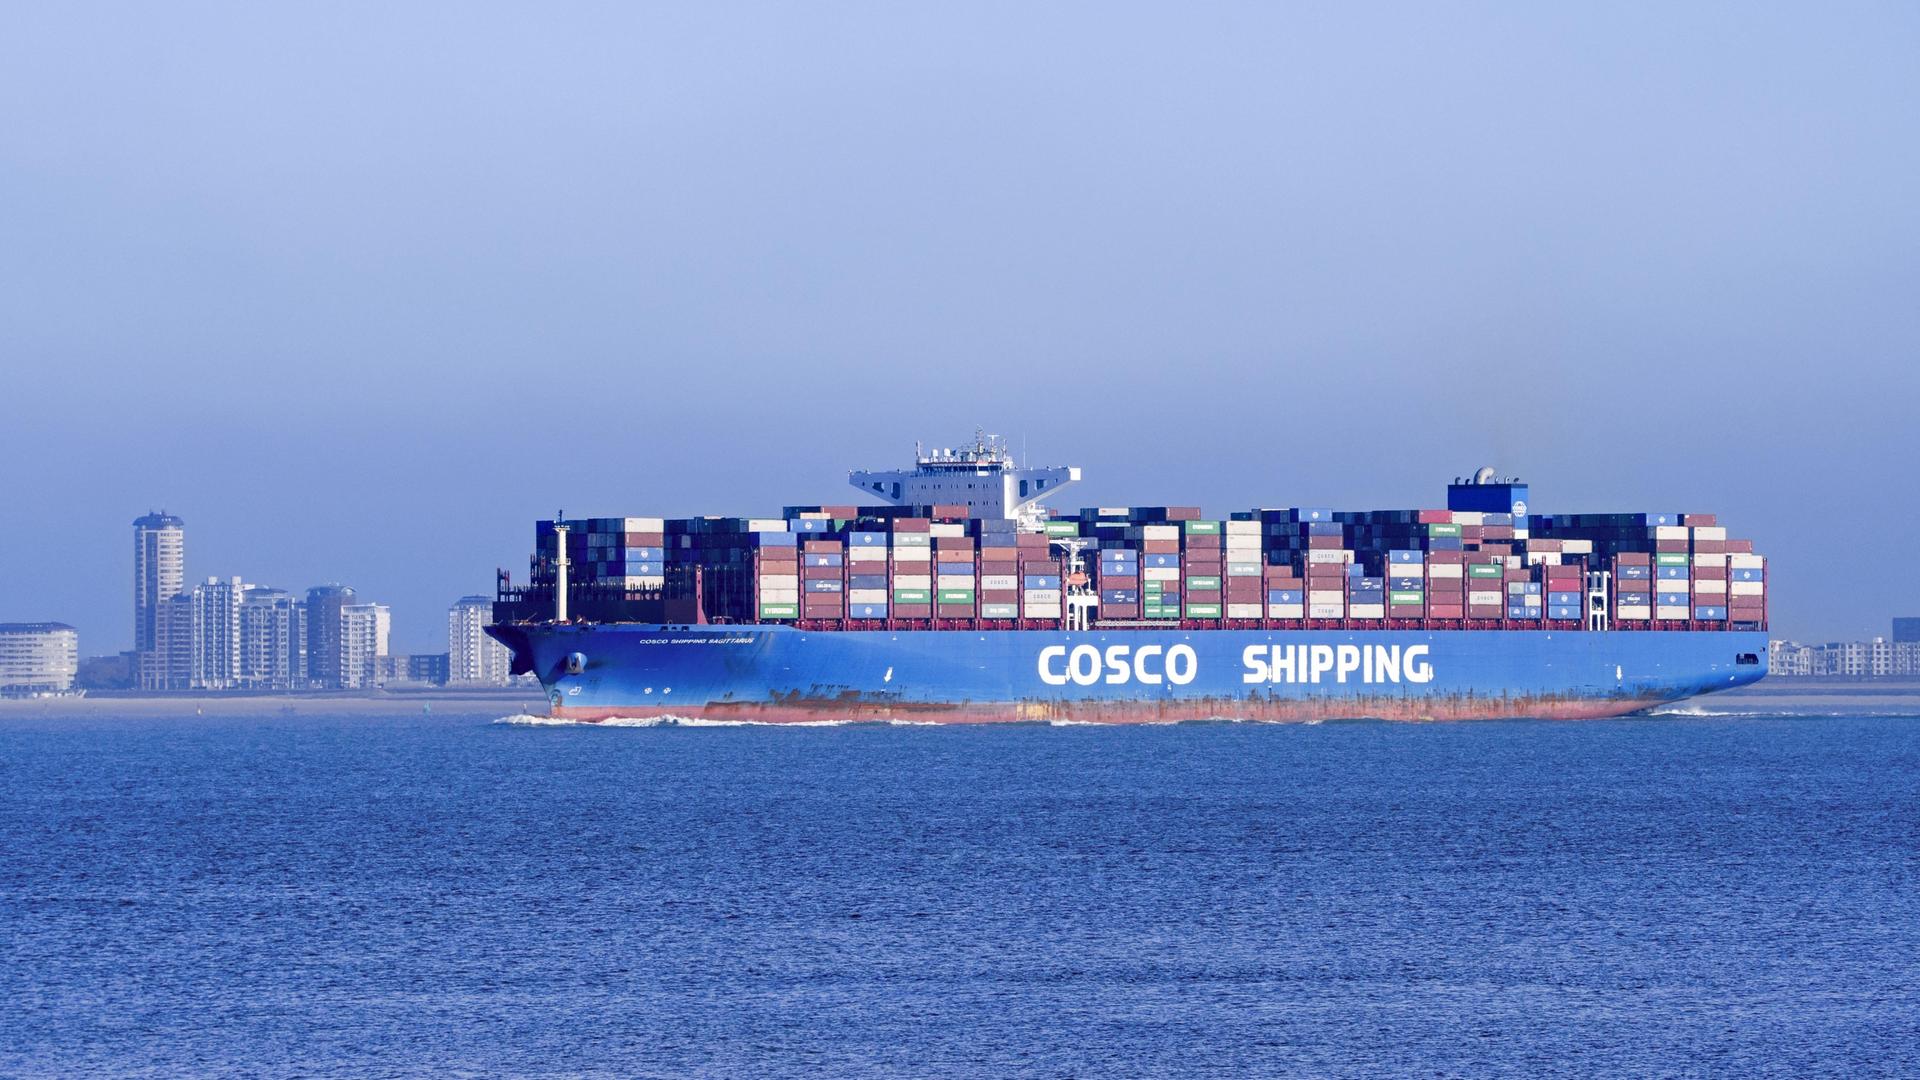 Chinesisches Containerschiff von Cosco Shipping, beladen mit Containern auf der Nordsee, unter der Flagge von Hongkong